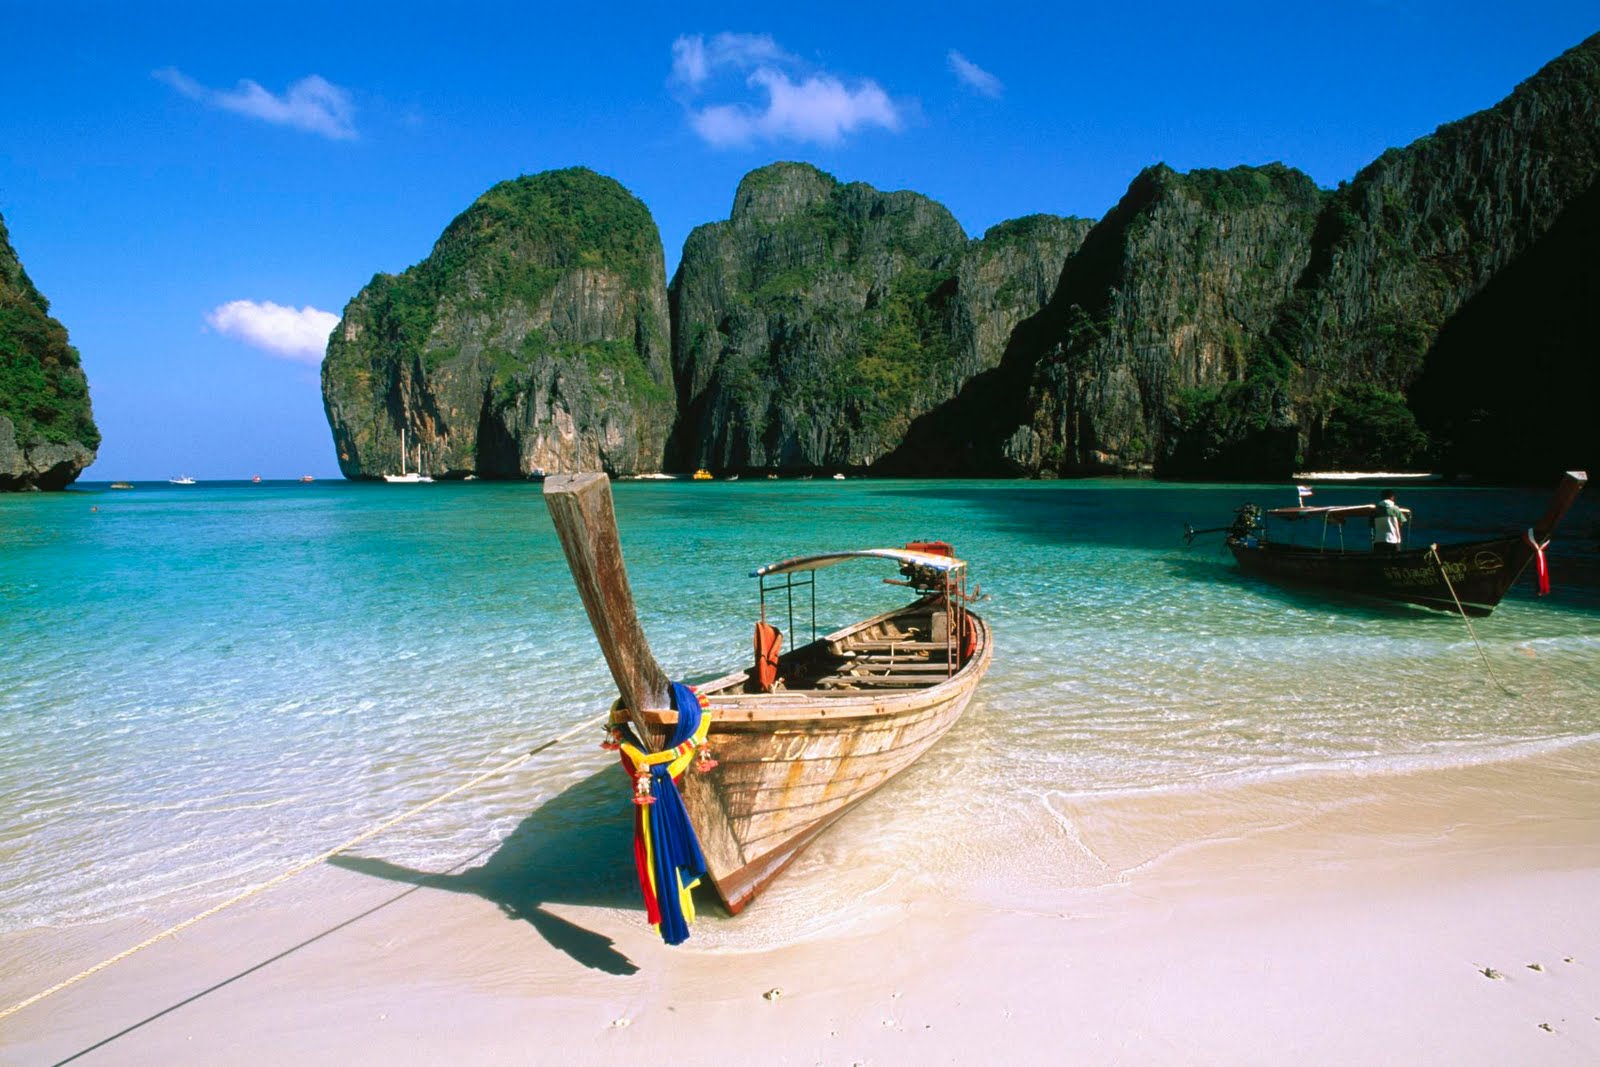 افضل الانشطة فى جزيرة الرومانسيه كونجاى تايلاند | جزيرة كونجاى تايلاند